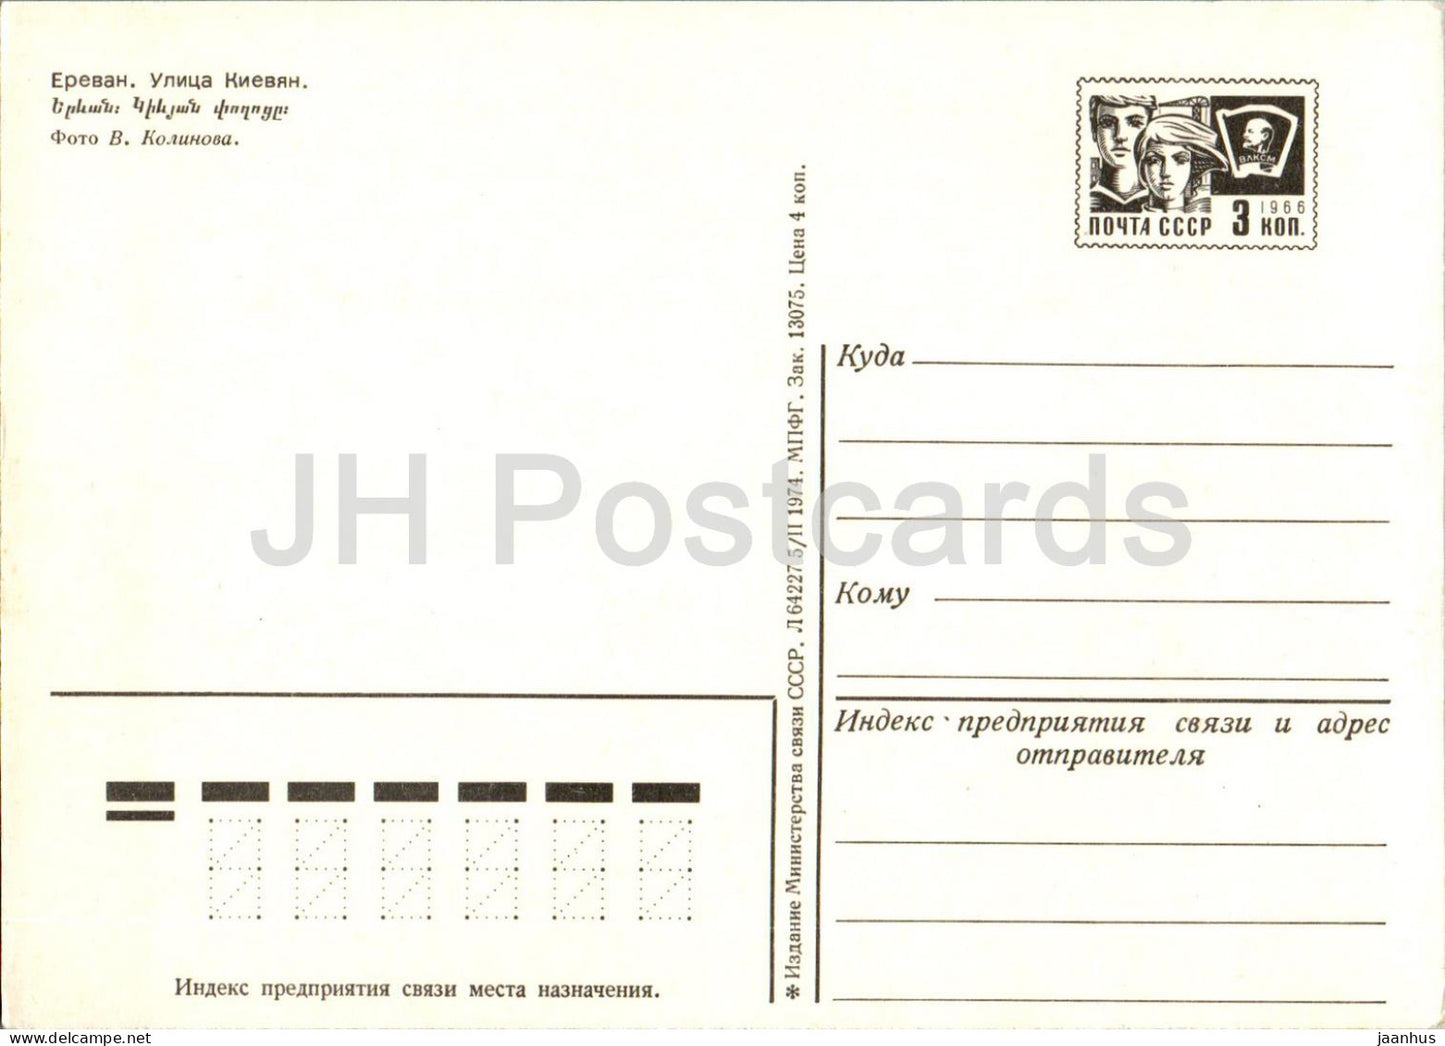 Yerevan - Kievyan Street - car - postal stationery - 1974 - Armenia USSR - unused